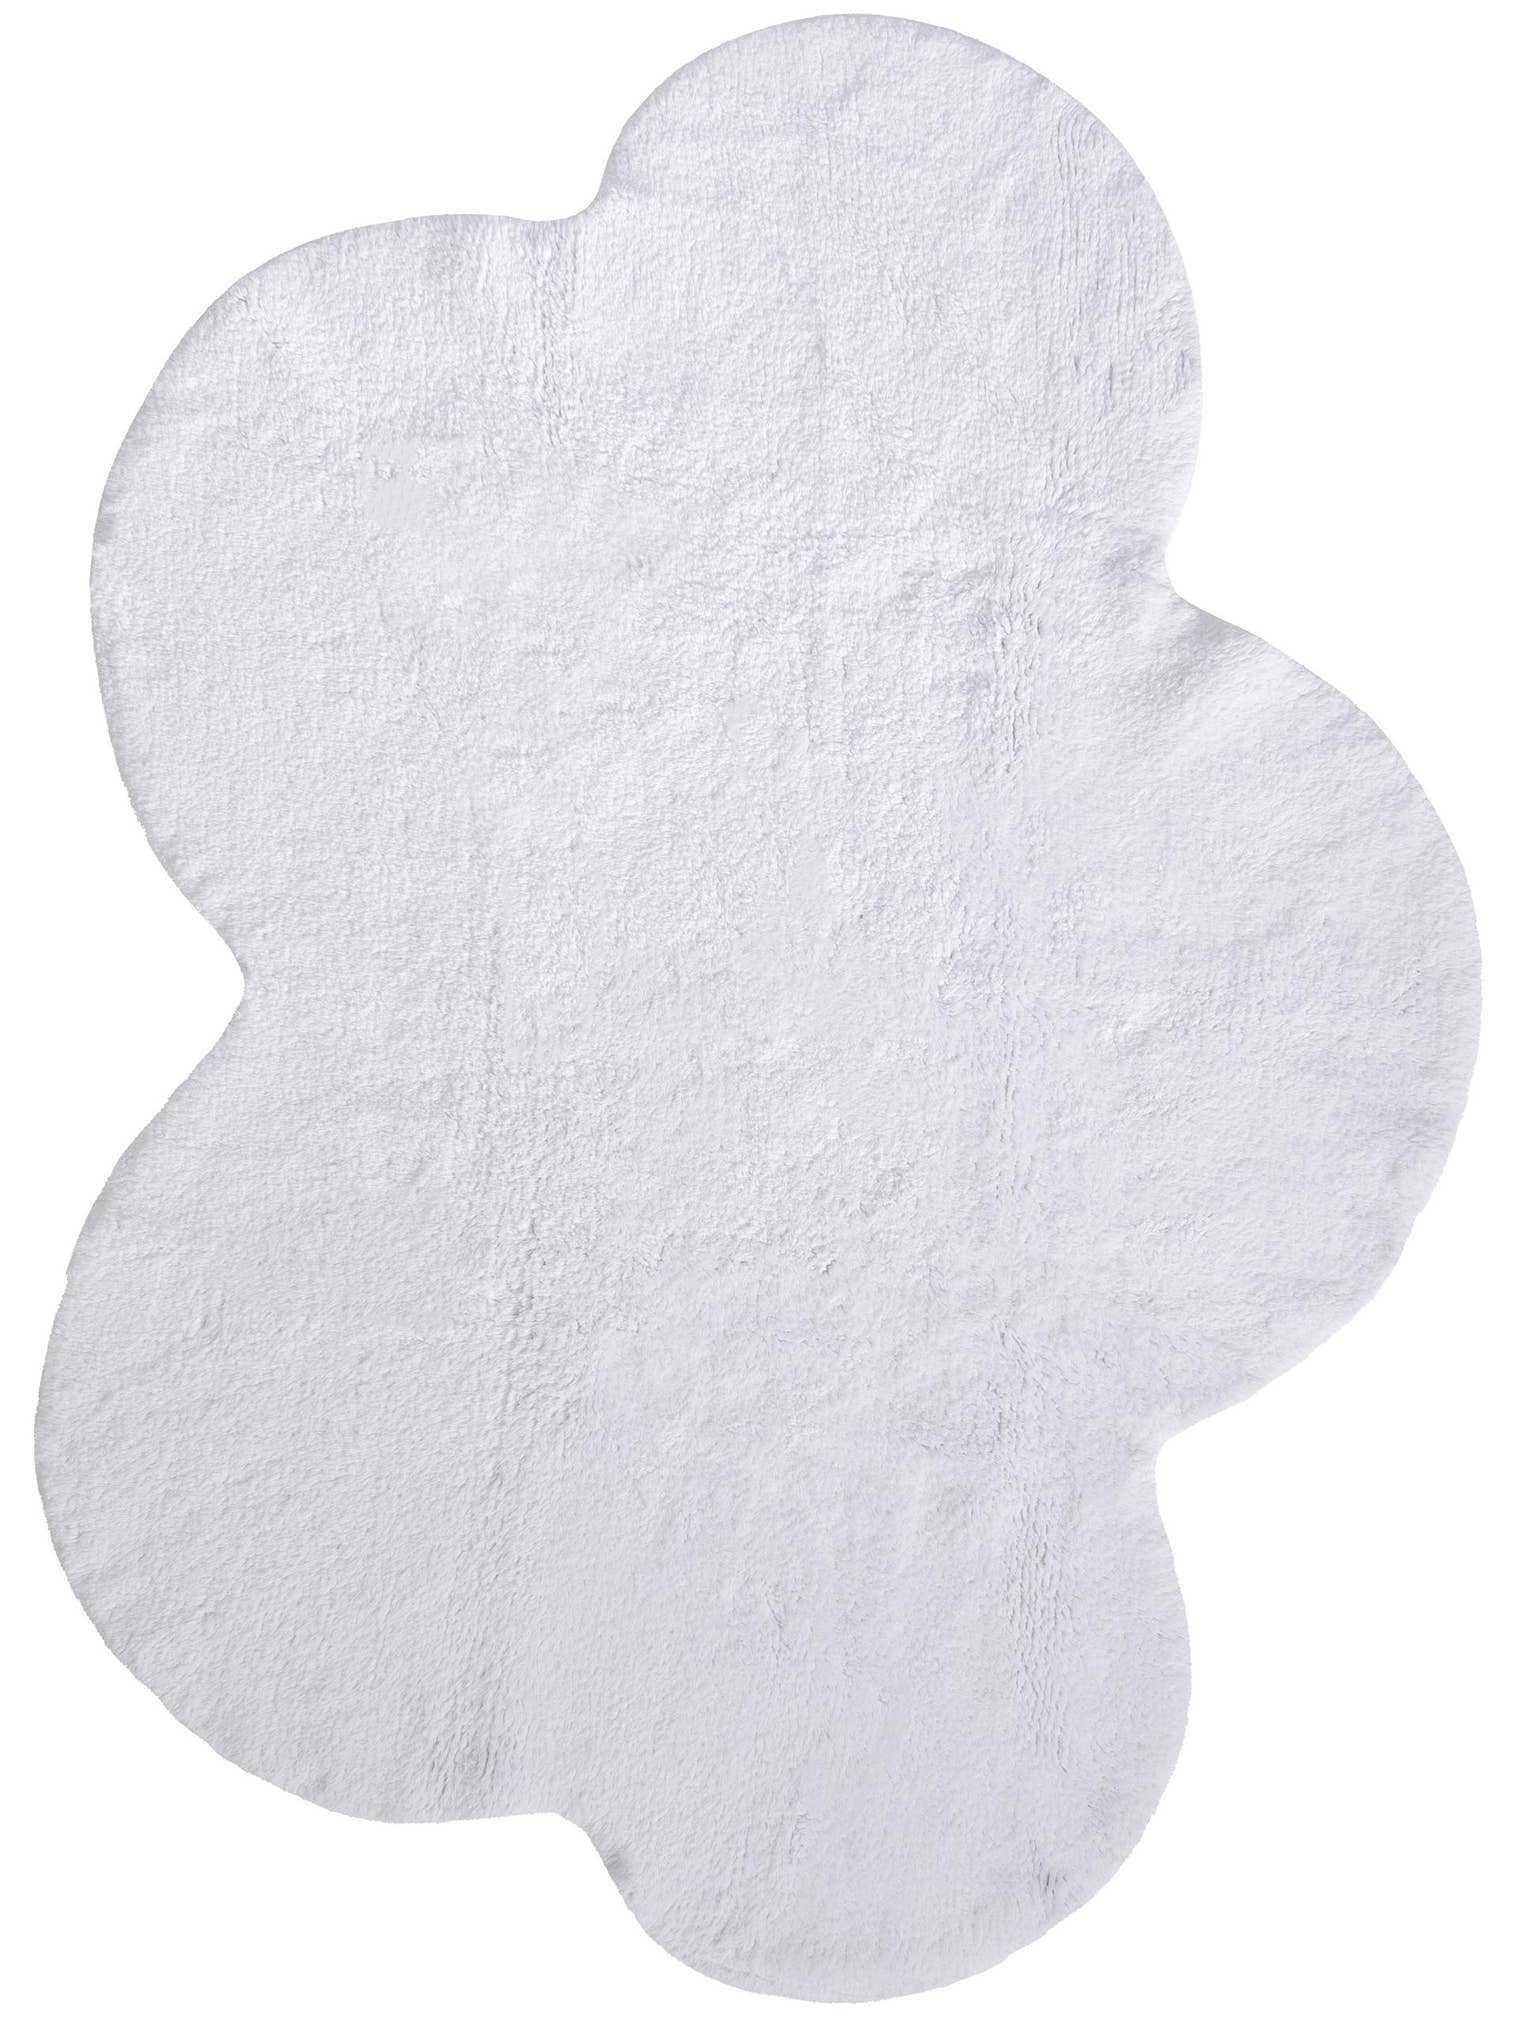 Tapijt van 100% Katoen in Wit met een 11 - 20 mm hoge pool van Lytte